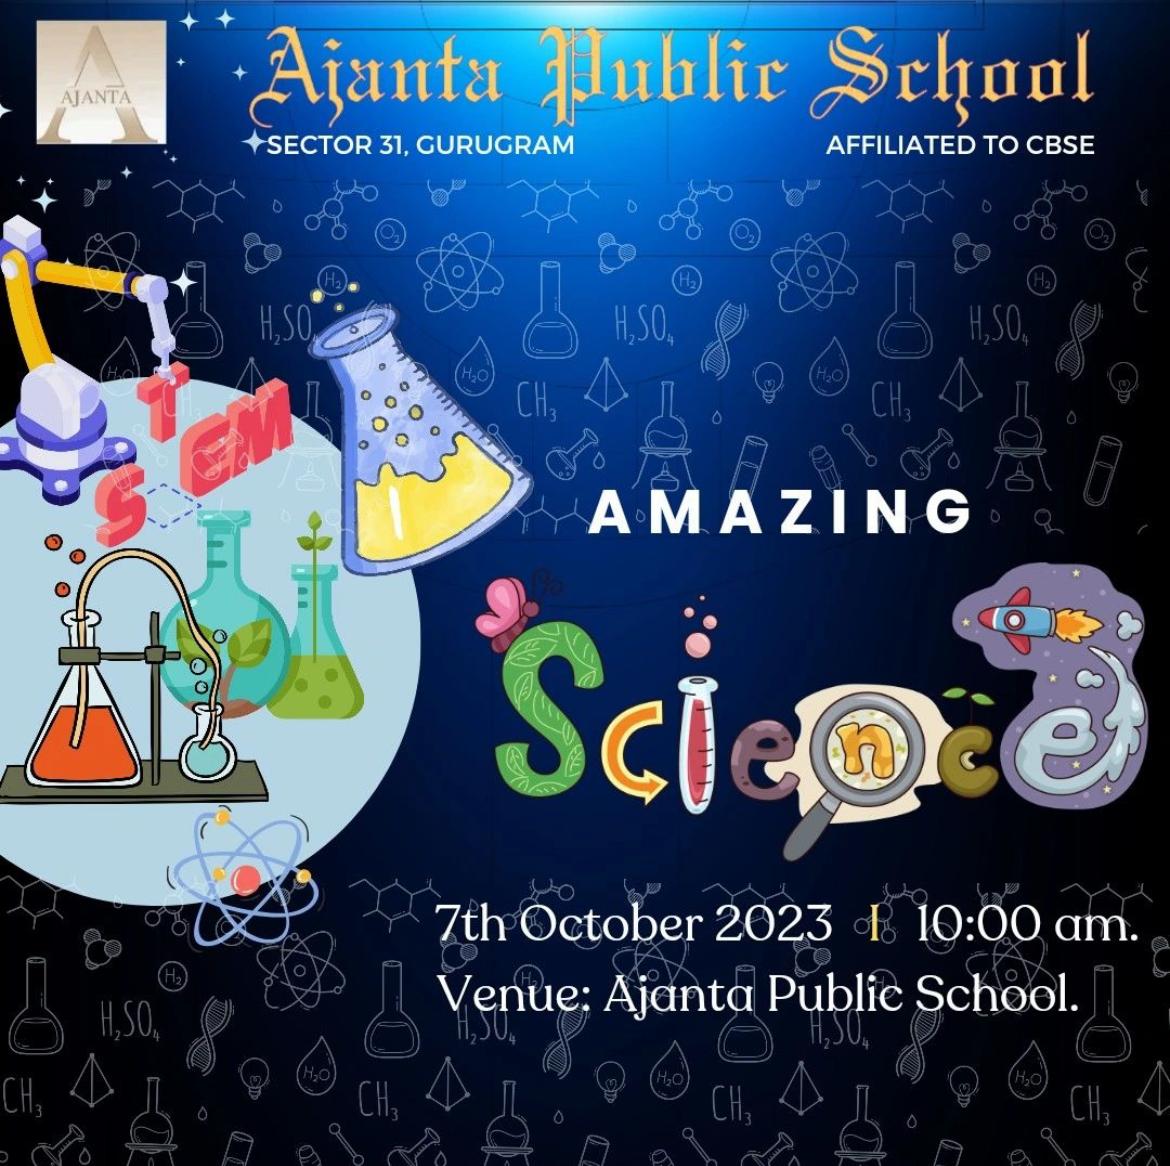 Ajanta Public School, Gurugram Invites Parents to “Amazing Science” Event on October 7th.